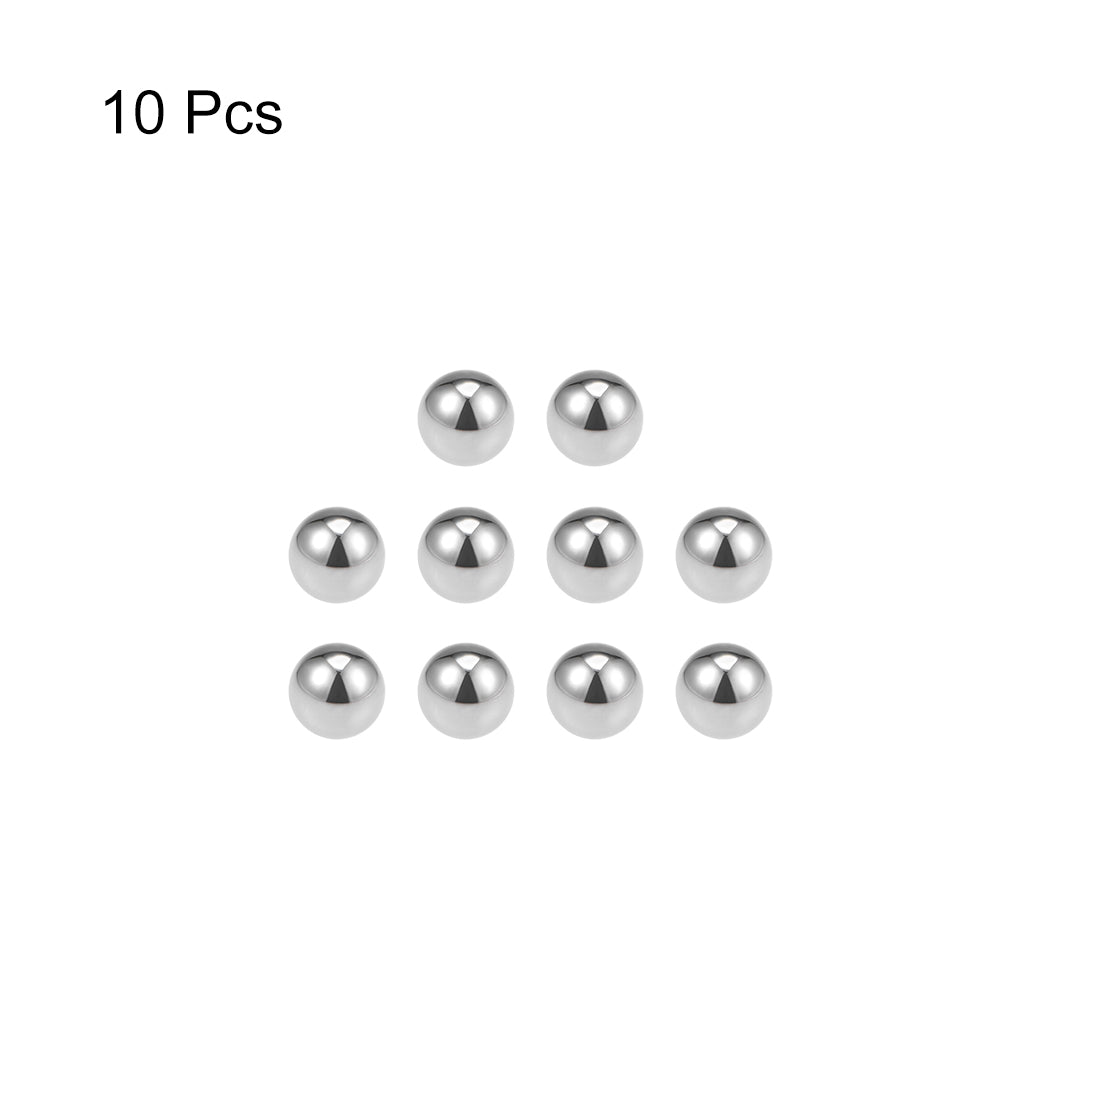 Uxcell Uxcell 2.5mm Bearing Balls Tungsten Carbide G25 Precision Balls 10pcs